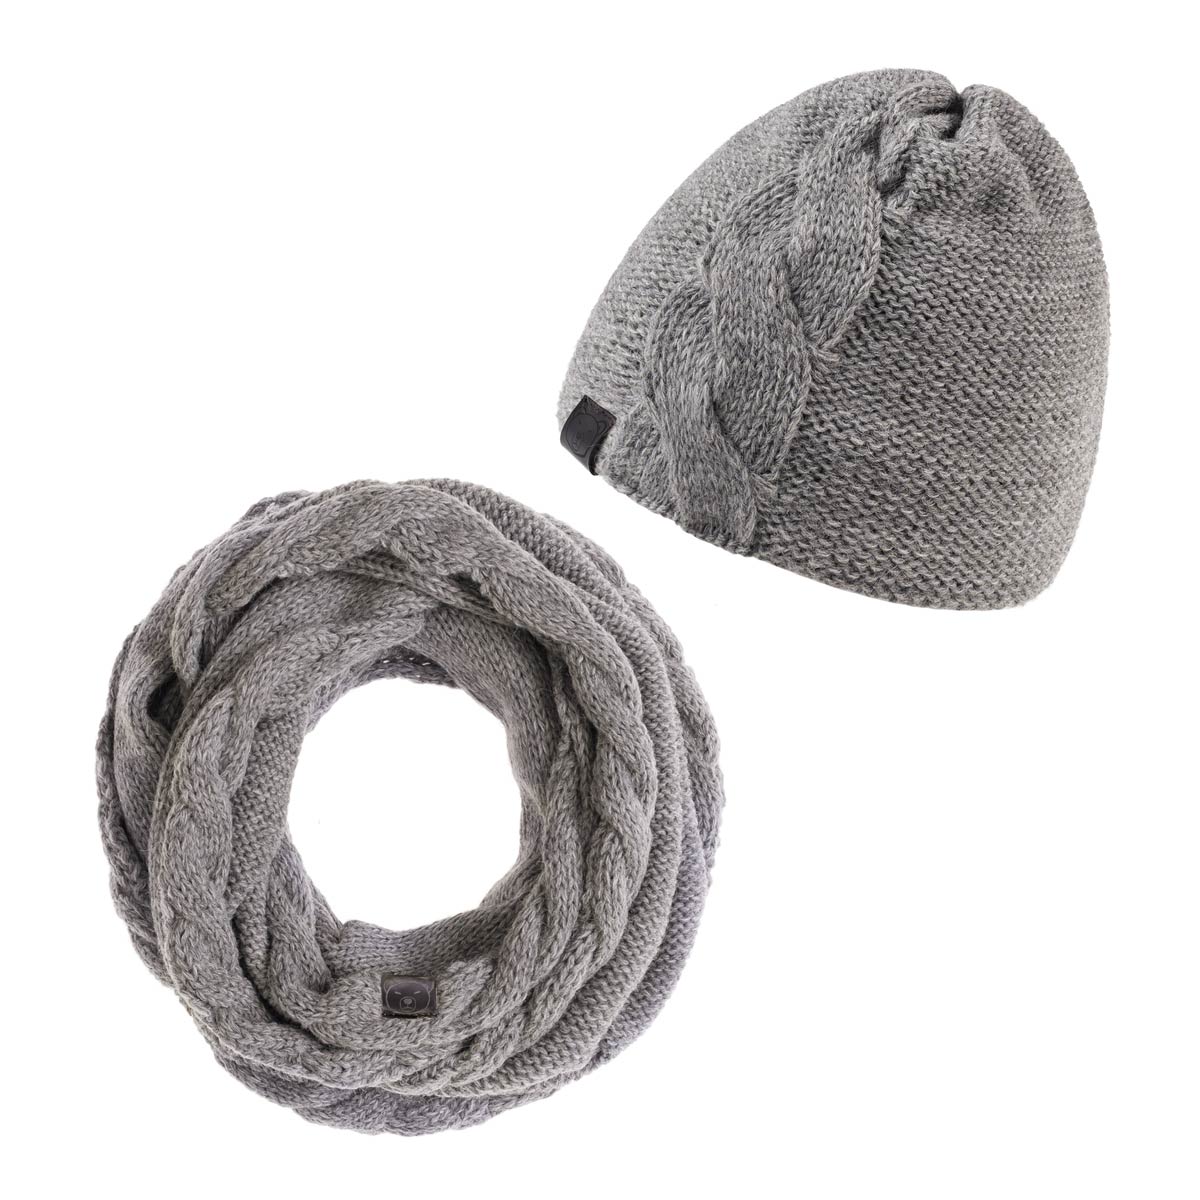 PK-00125_F12-1--_Ensemble-hiver-bonnet-snood-gris